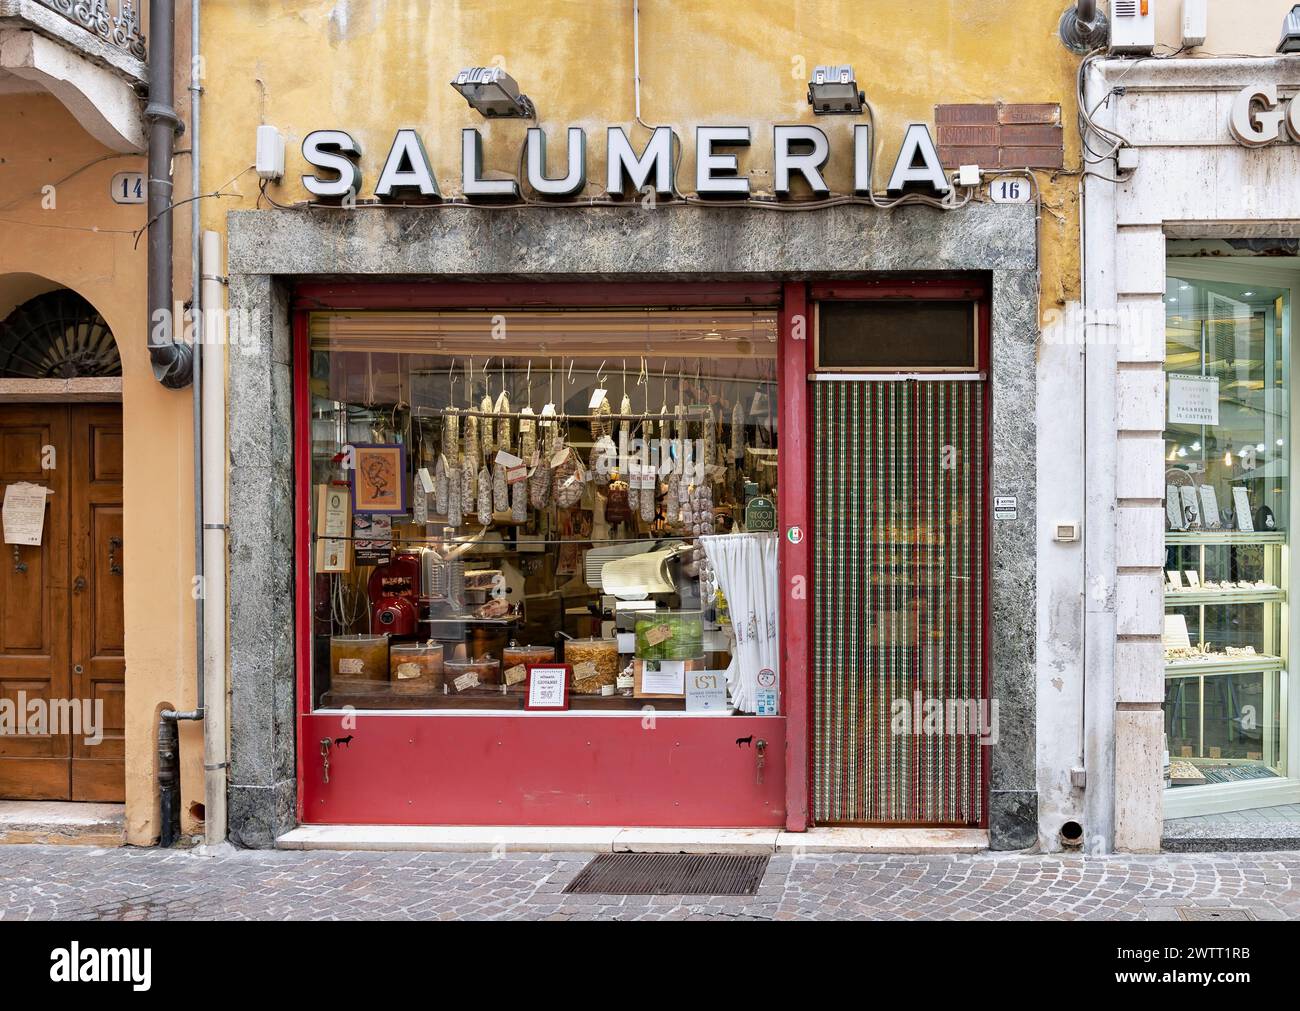 Alte italienische Salumeria (Delikatessengeschäft), Salami hängt im Fenster, Eingang und Schild. Mantua, Lombardei, Italien, Europa, Europäische Union, EU. Stockfoto